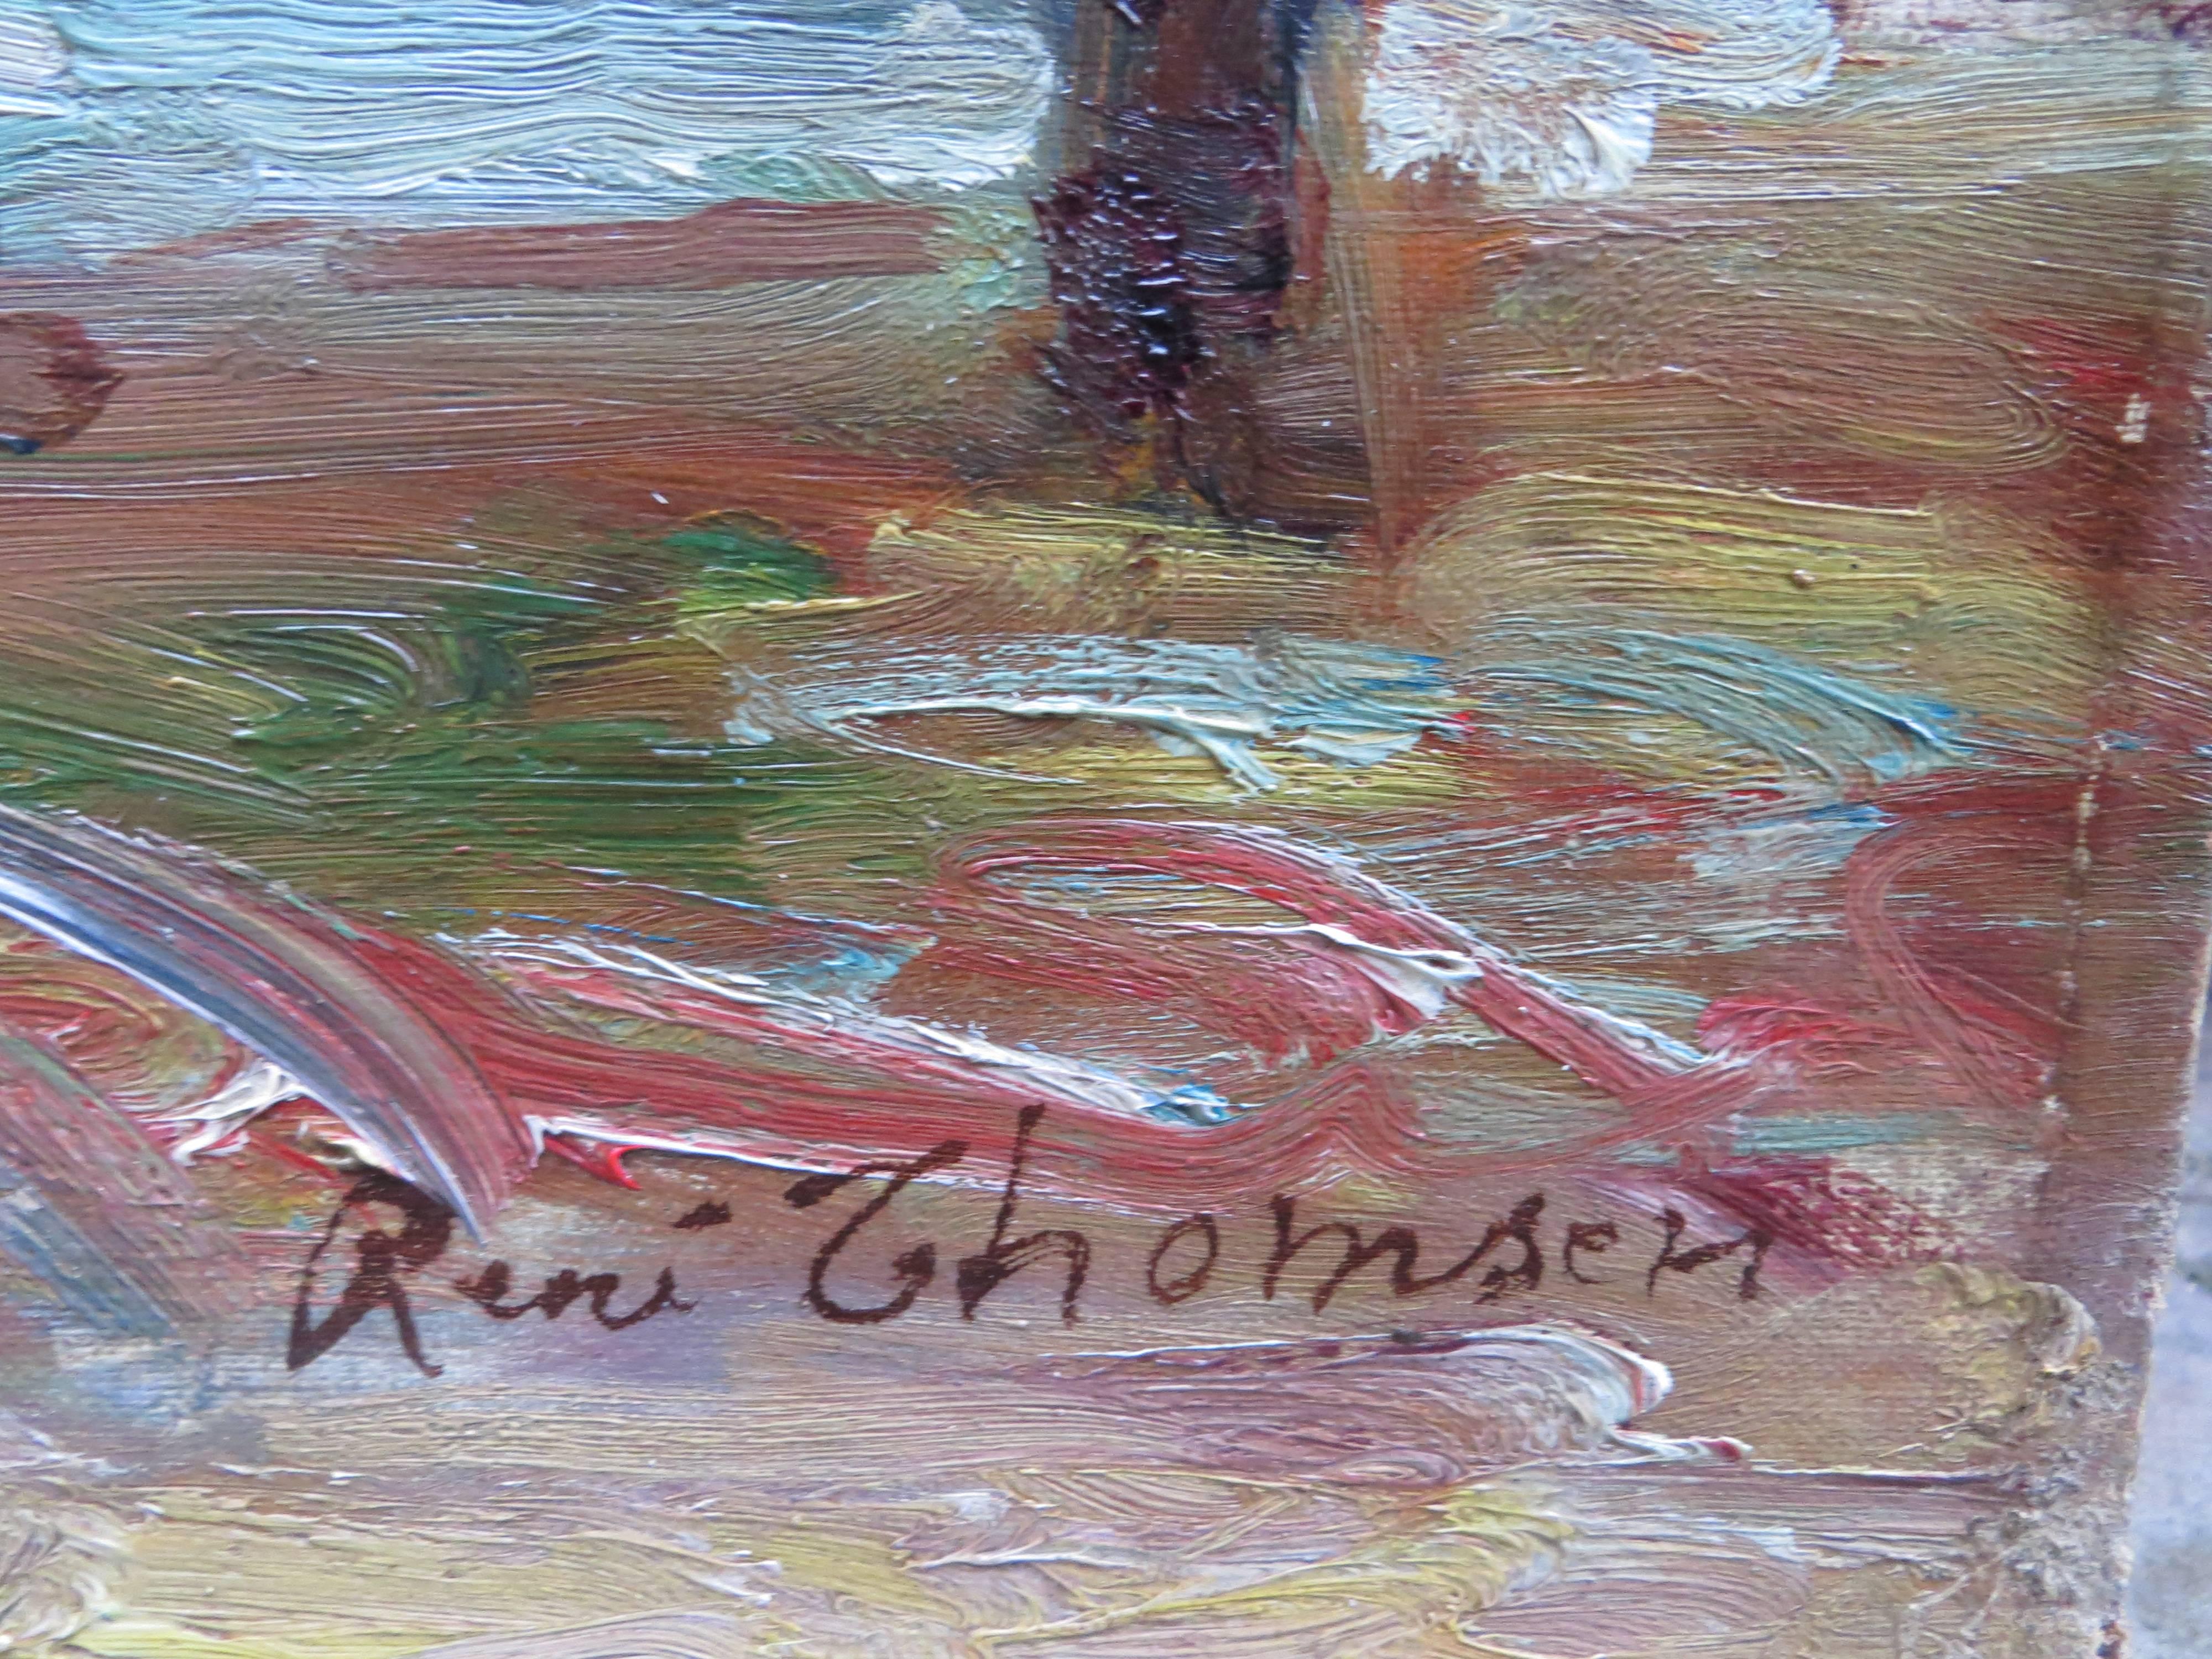 Seine-Ufer von René THOMSEN – Painting von René Thomsen